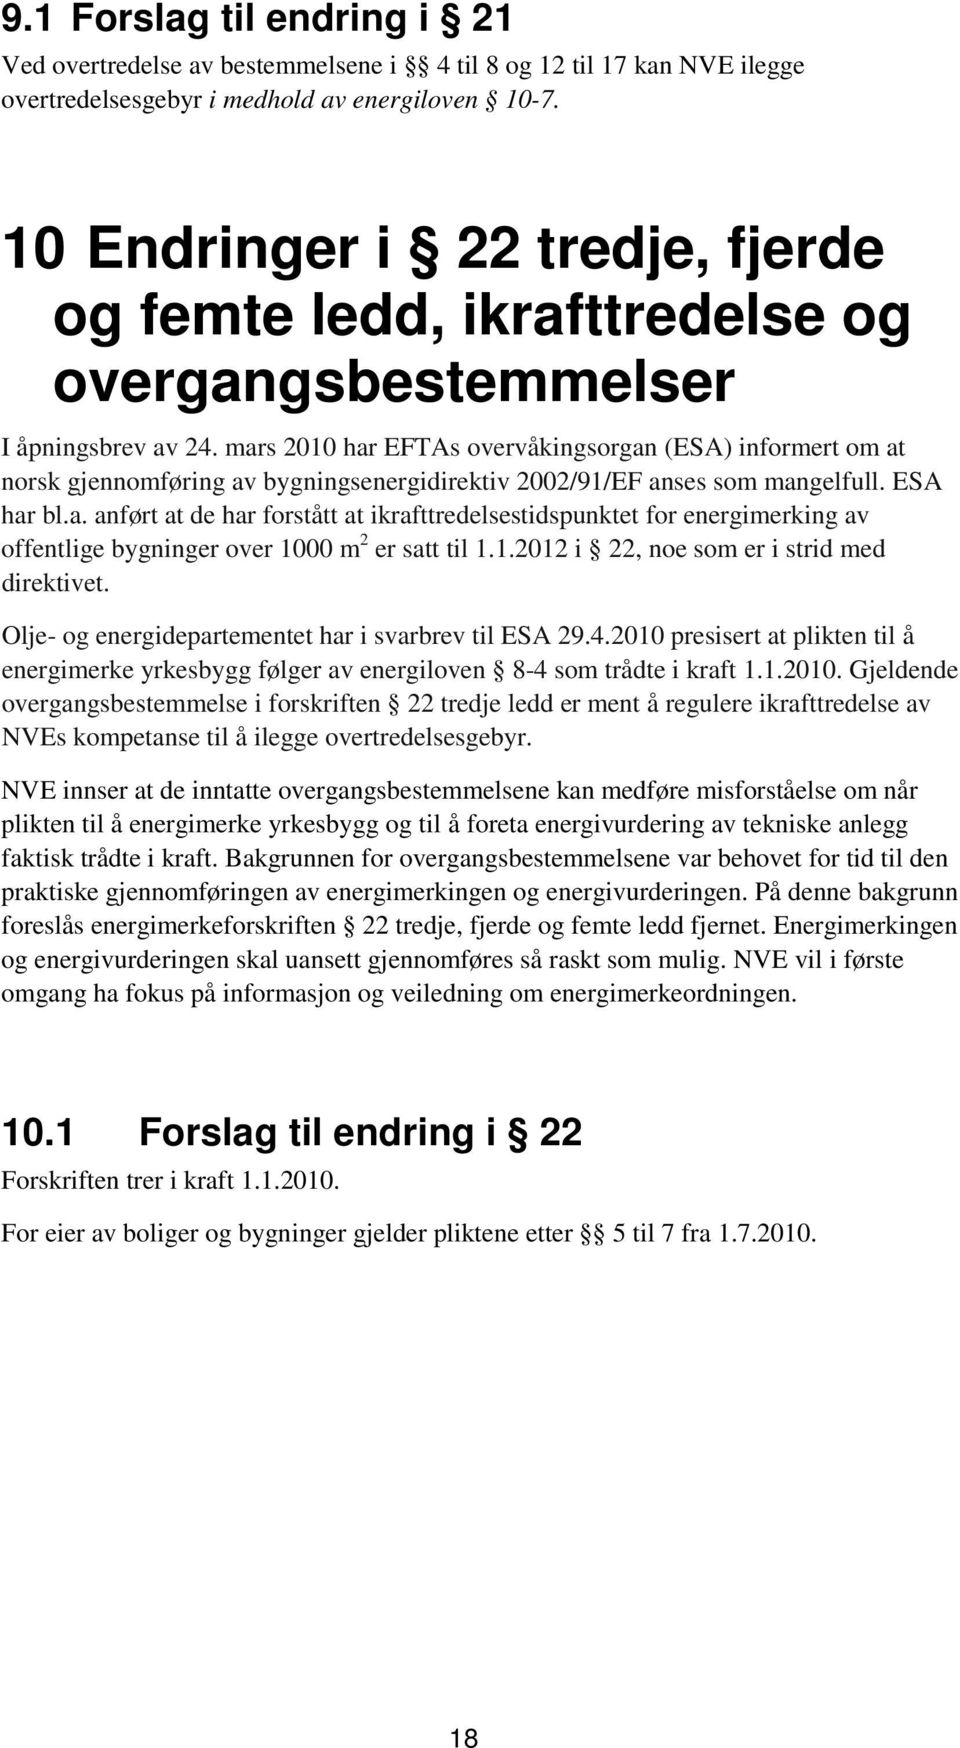 mars 2010 har EFTAs overvåkingsorgan (ESA) informert om at norsk gjennomføring av bygningsenergidirektiv 2002/91/EF anses som mangelfull. ESA har bl.a. anført at de har forstått at ikrafttredelsestidspunktet for energimerking av offentlige bygninger over 1000 m 2 er satt til 1.